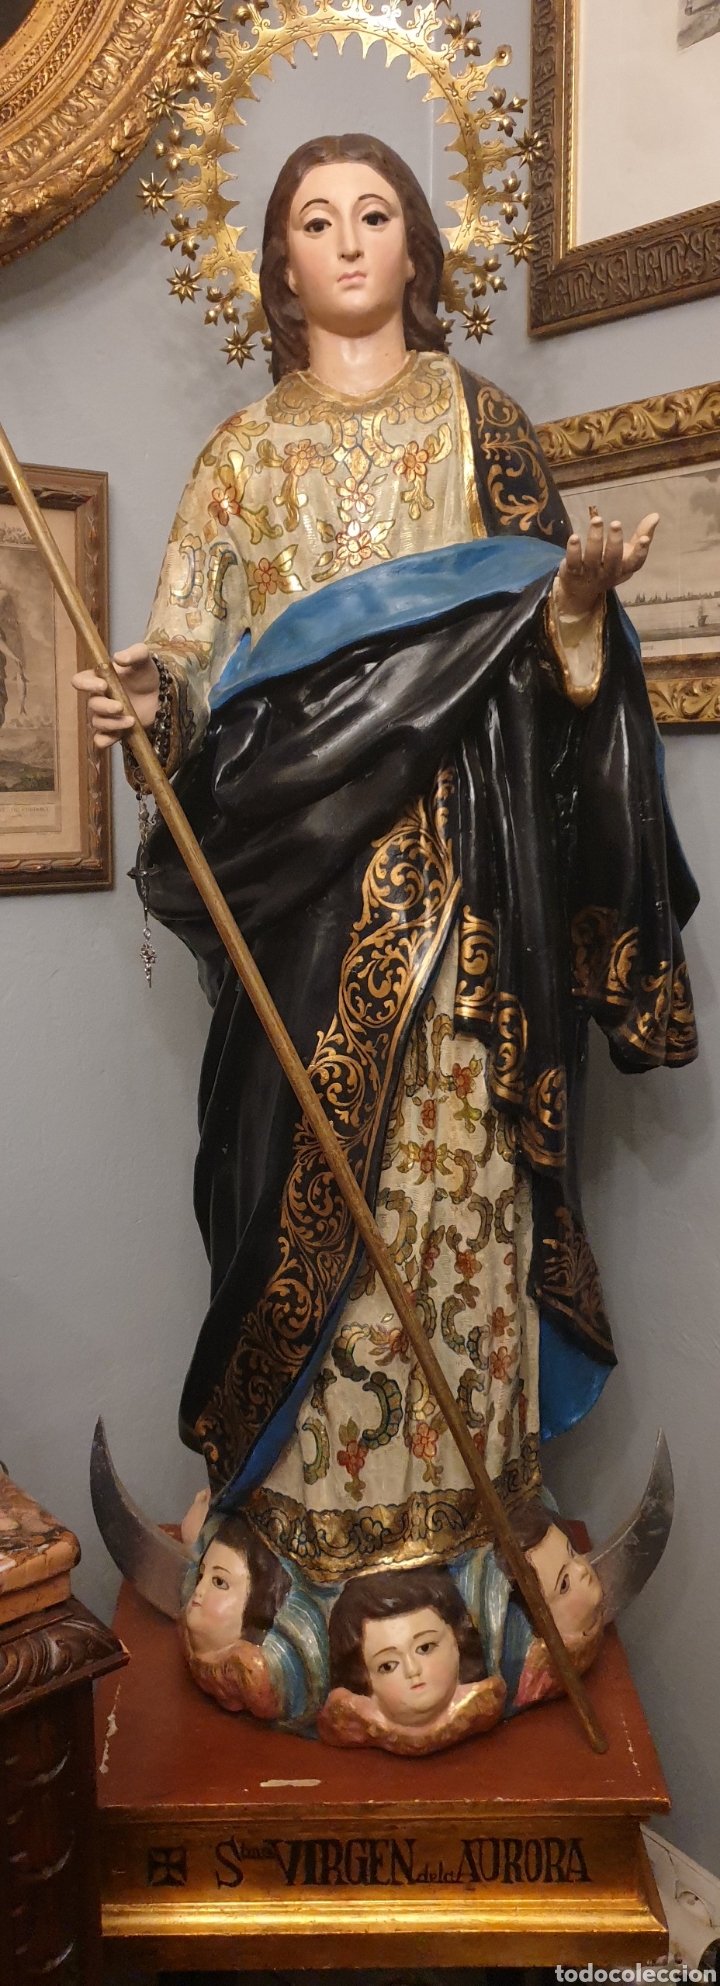 Antigüedades: Virgen de la aurora del siglo XVIII ( cara y manos de madera El resto gasas enfocadas con escayola) - Foto 1 - 242917295